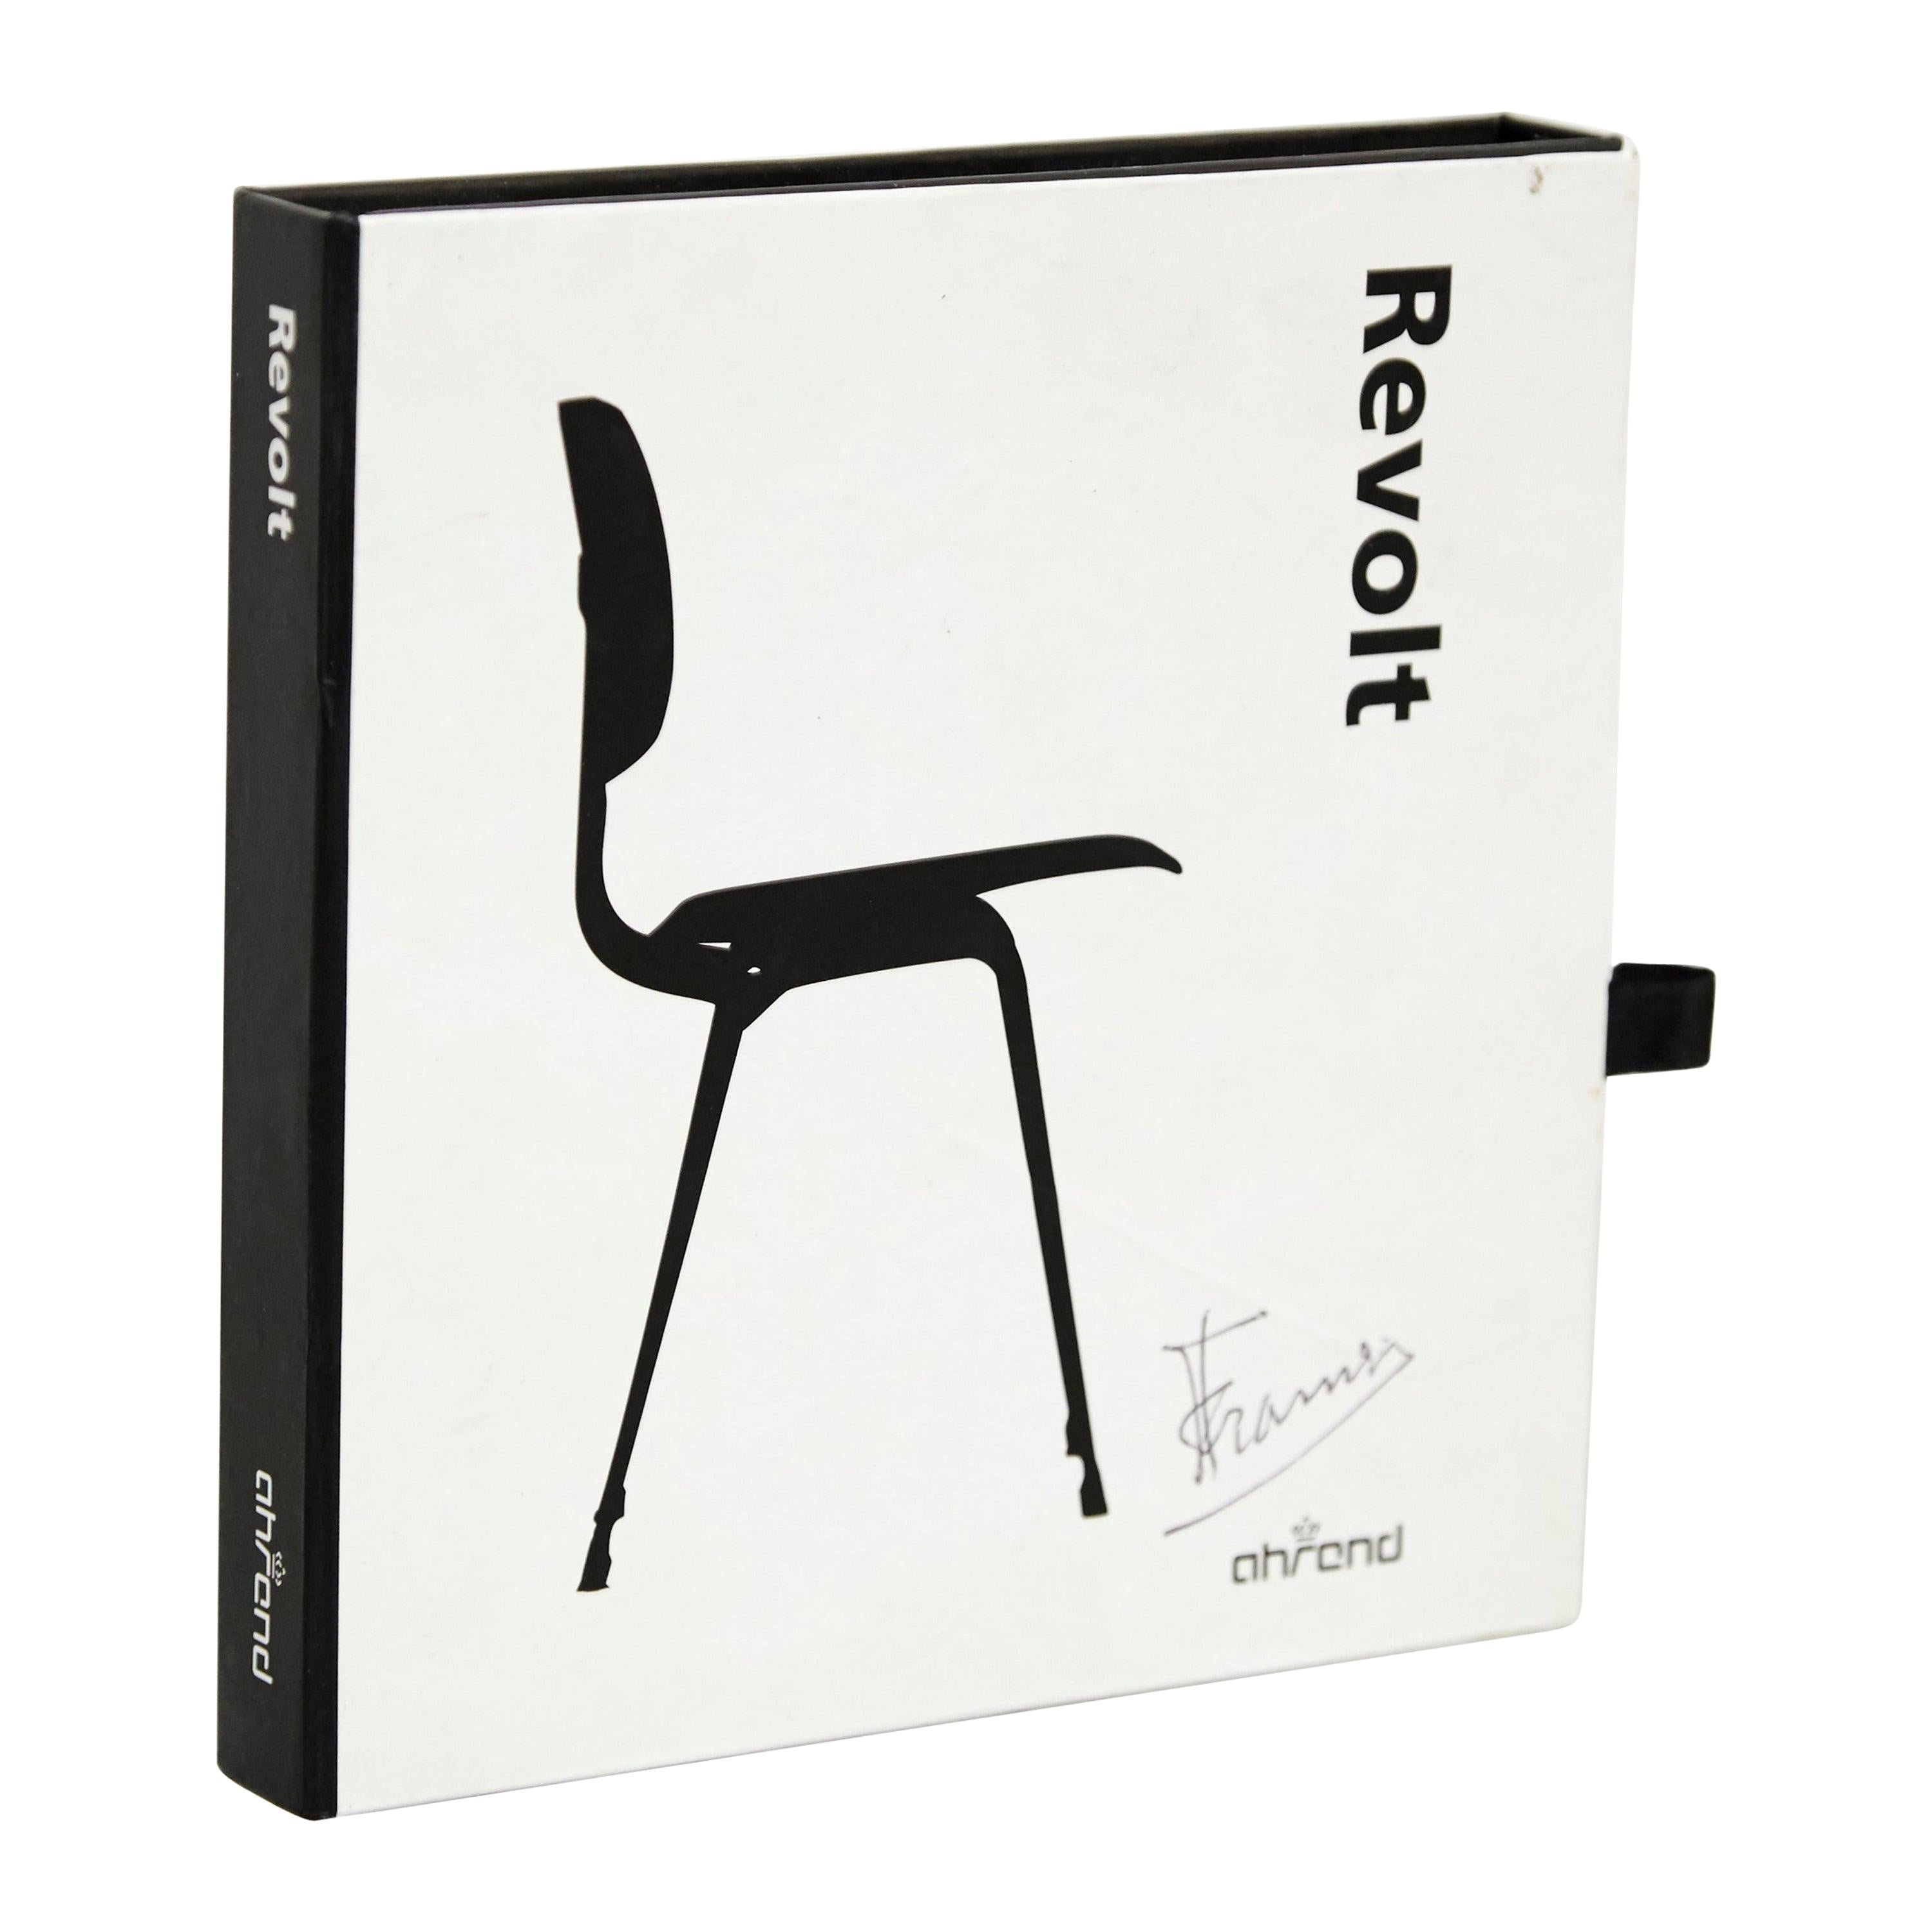 Friso Kramer Hand Signed Miniature Chair Toy Sculpture Ahrend de Cyrkel